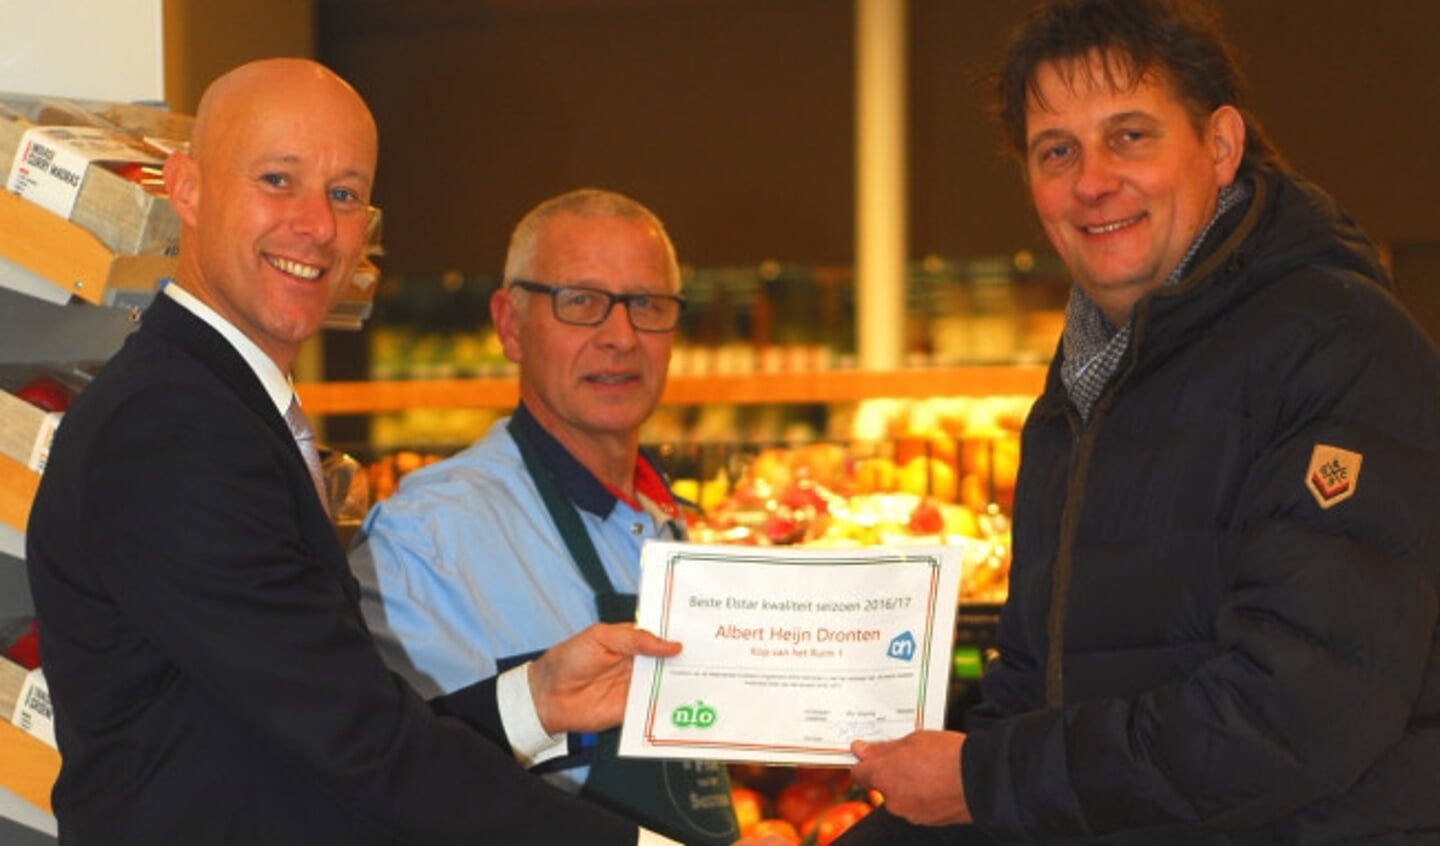  De overhandiging van de prijs aan de Albert Heijn in winkelcentrum Suydersee.